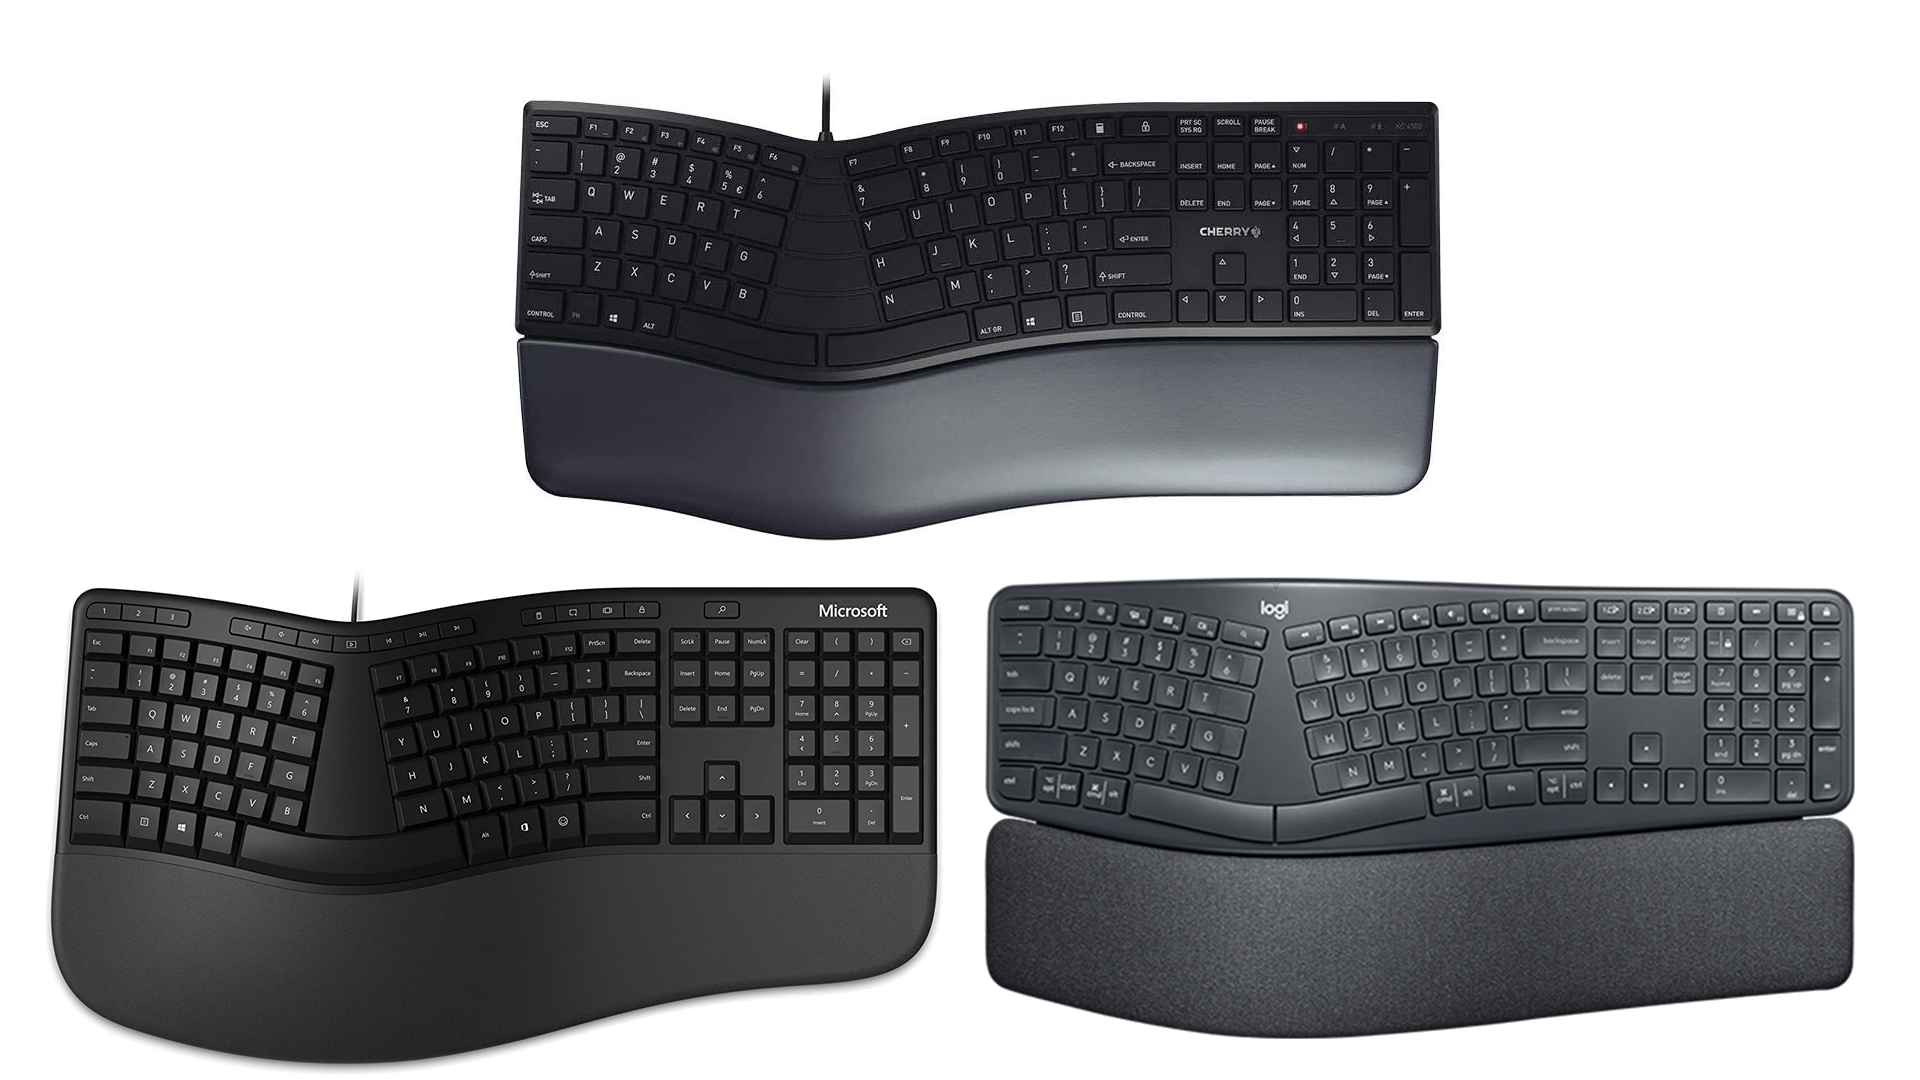 Ketiga keyboard tersebut memiliki bentuk yang sama.